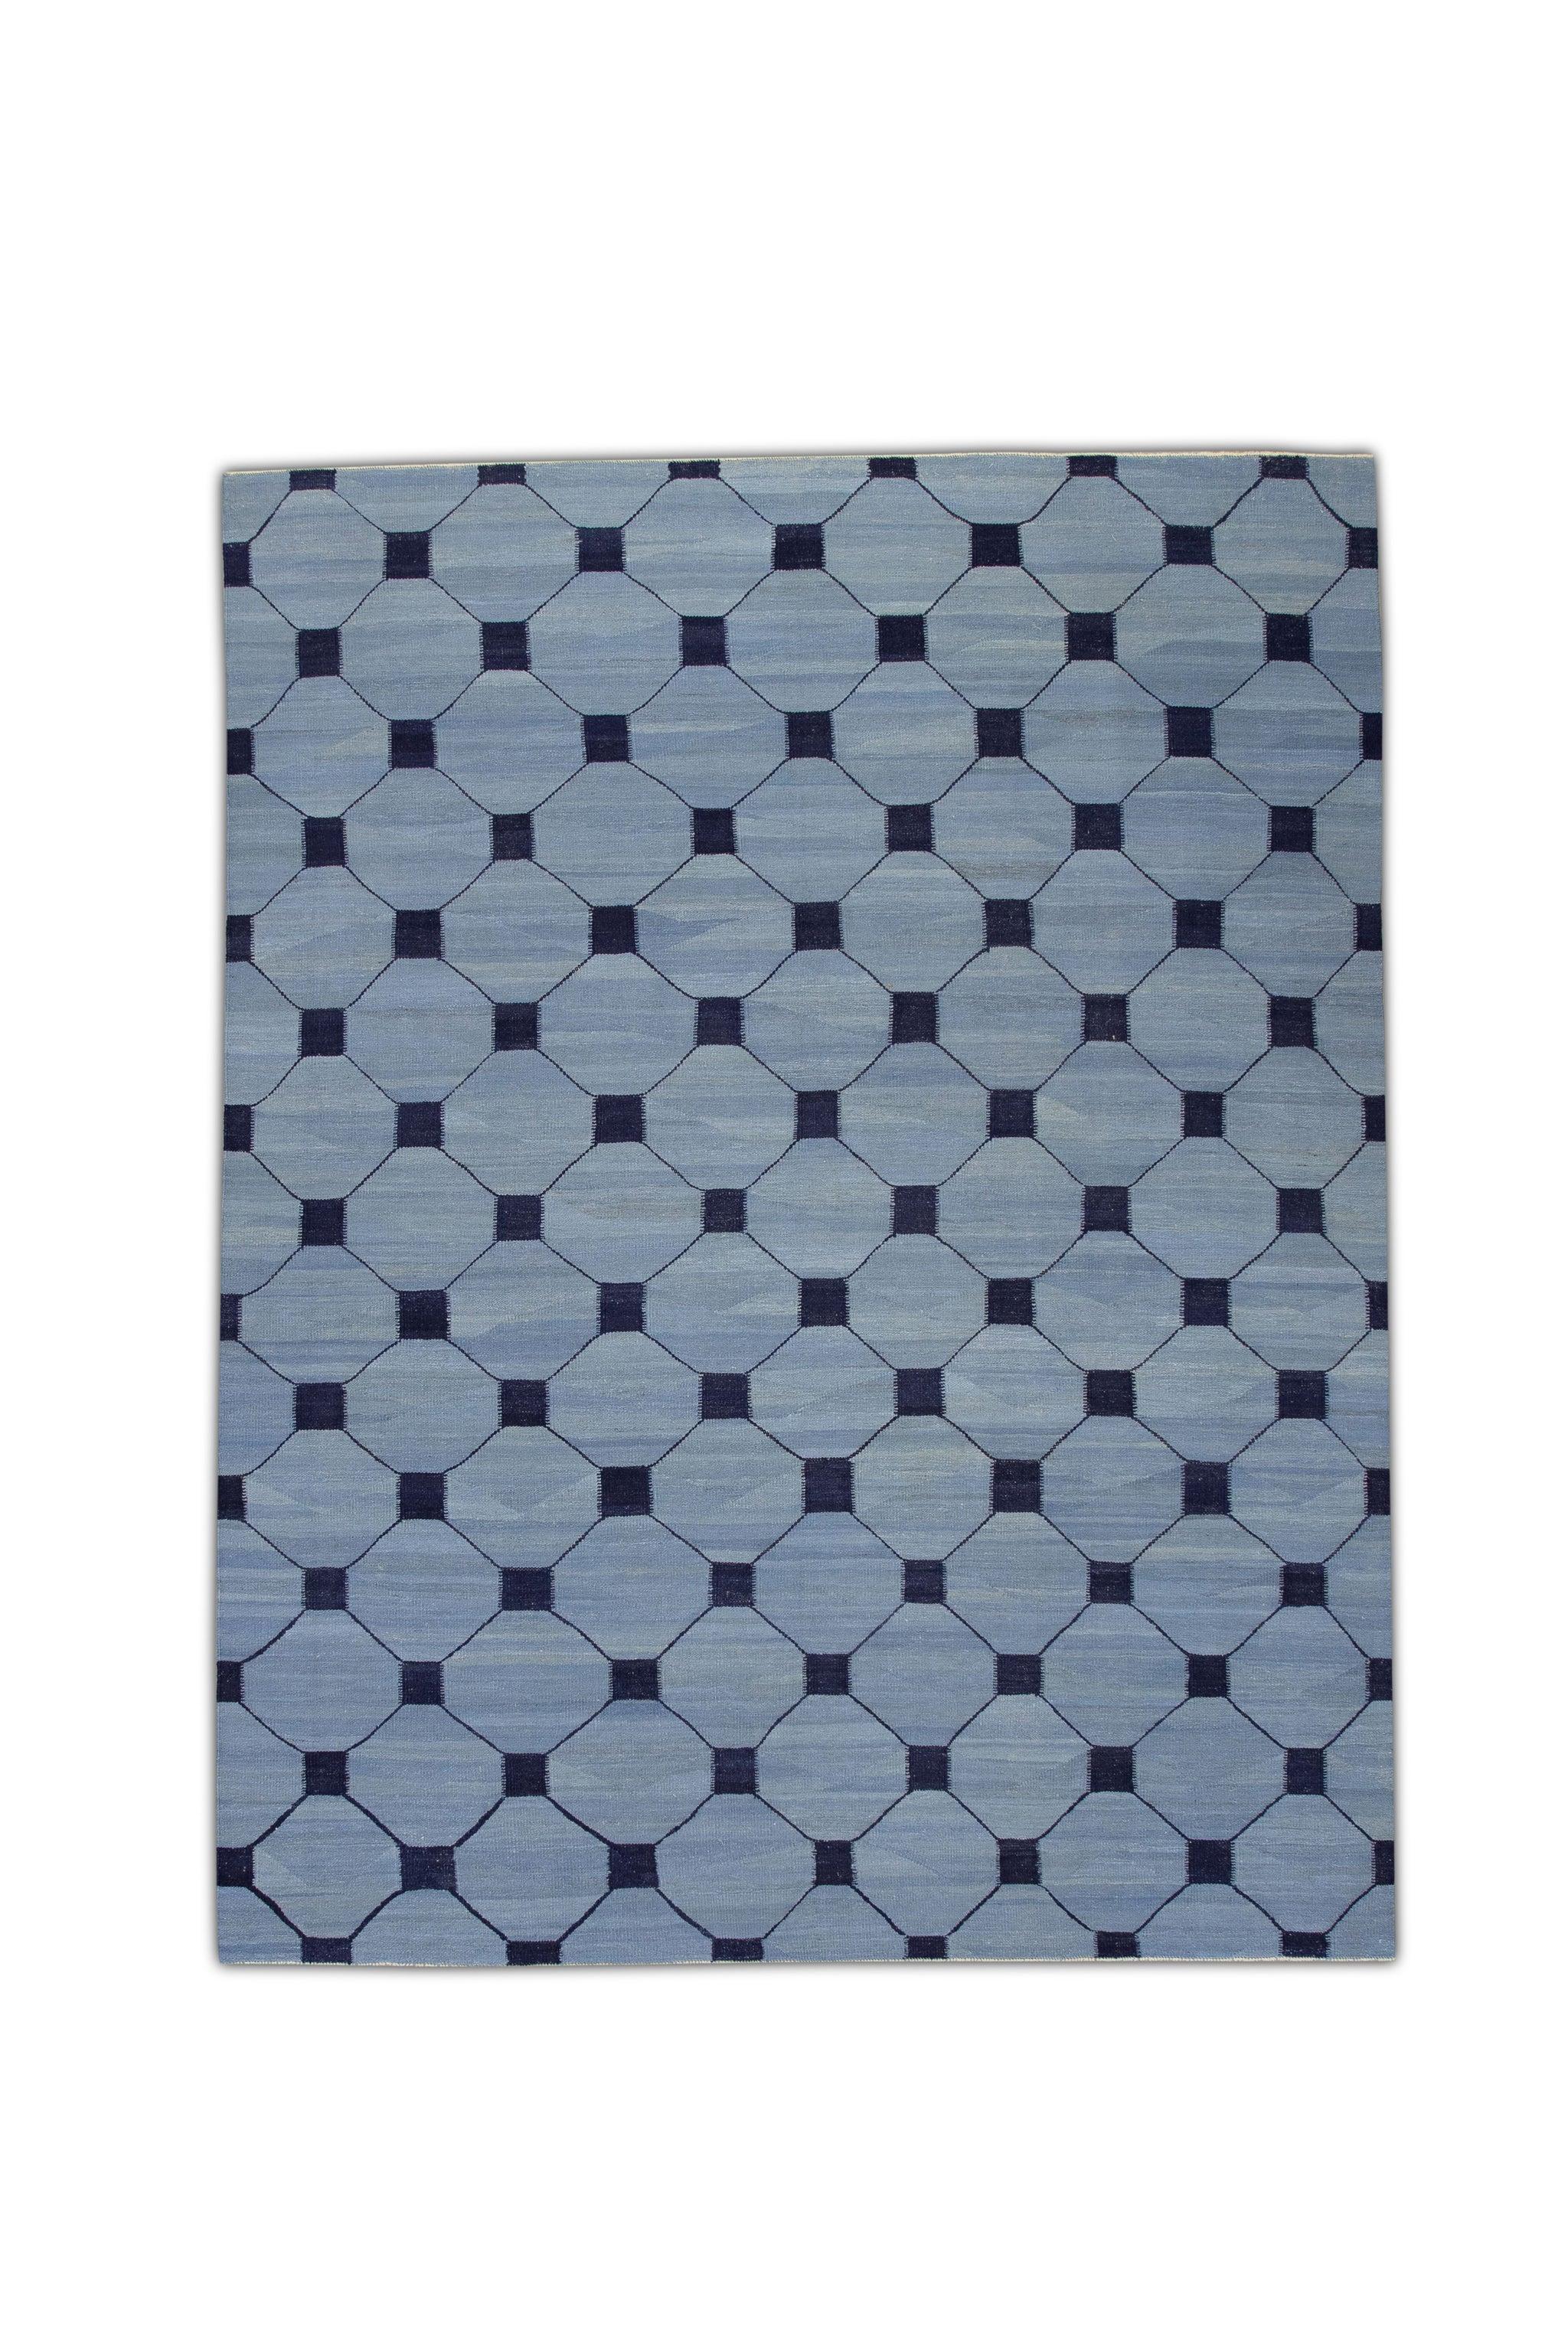 Blue Flatweave Handmade Wool Rug in Navy Geometric Design 9'2